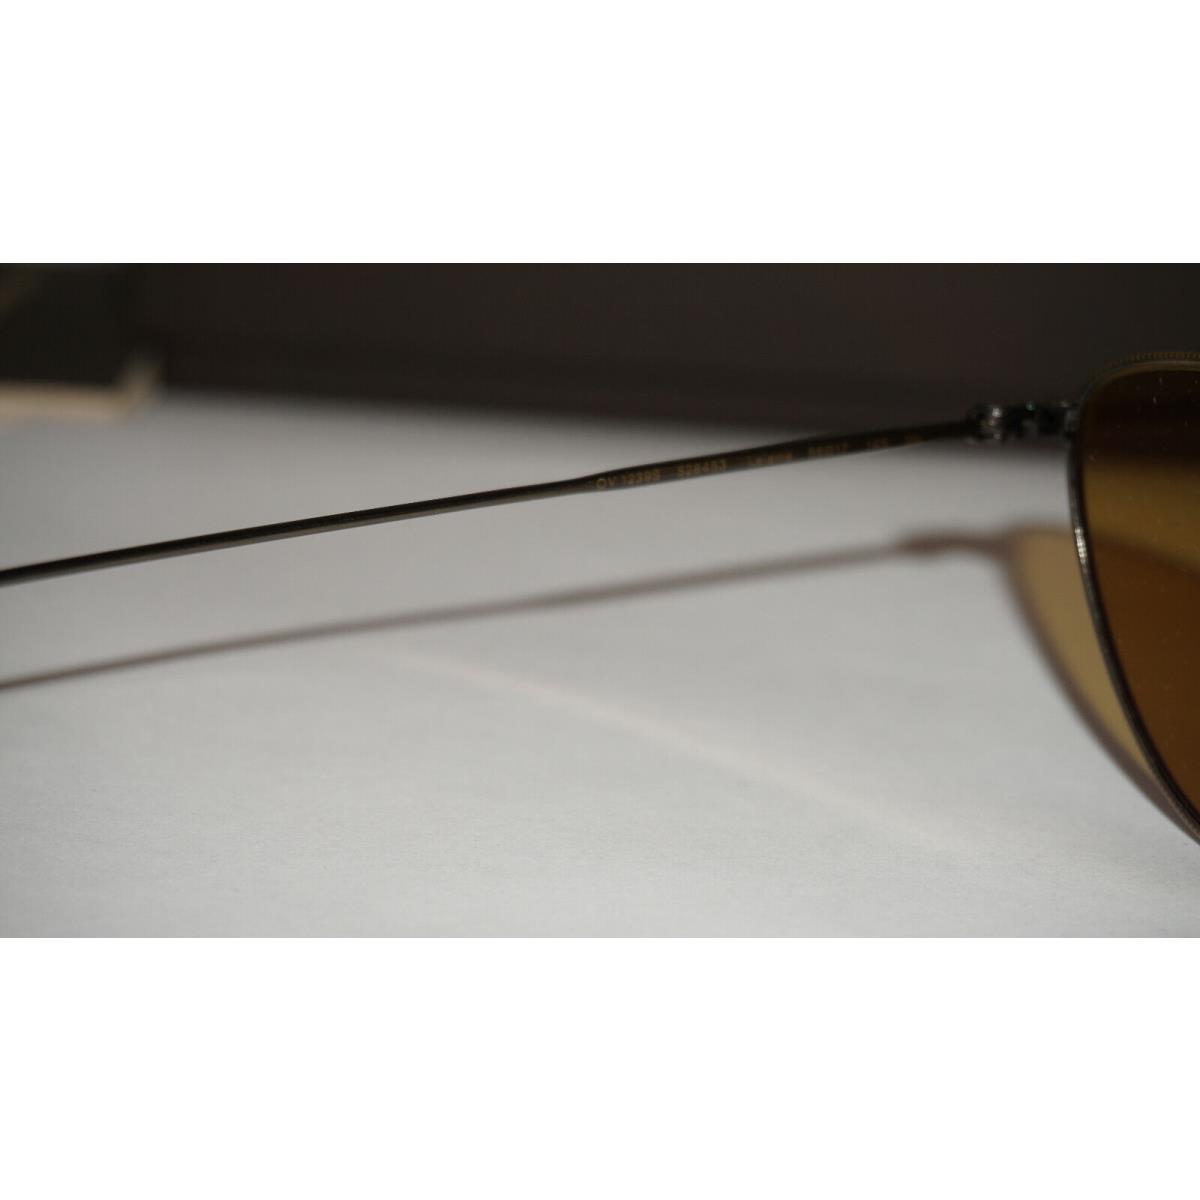 Oliver Peoples sunglasses  - Gold Frame, Brown Lens 6